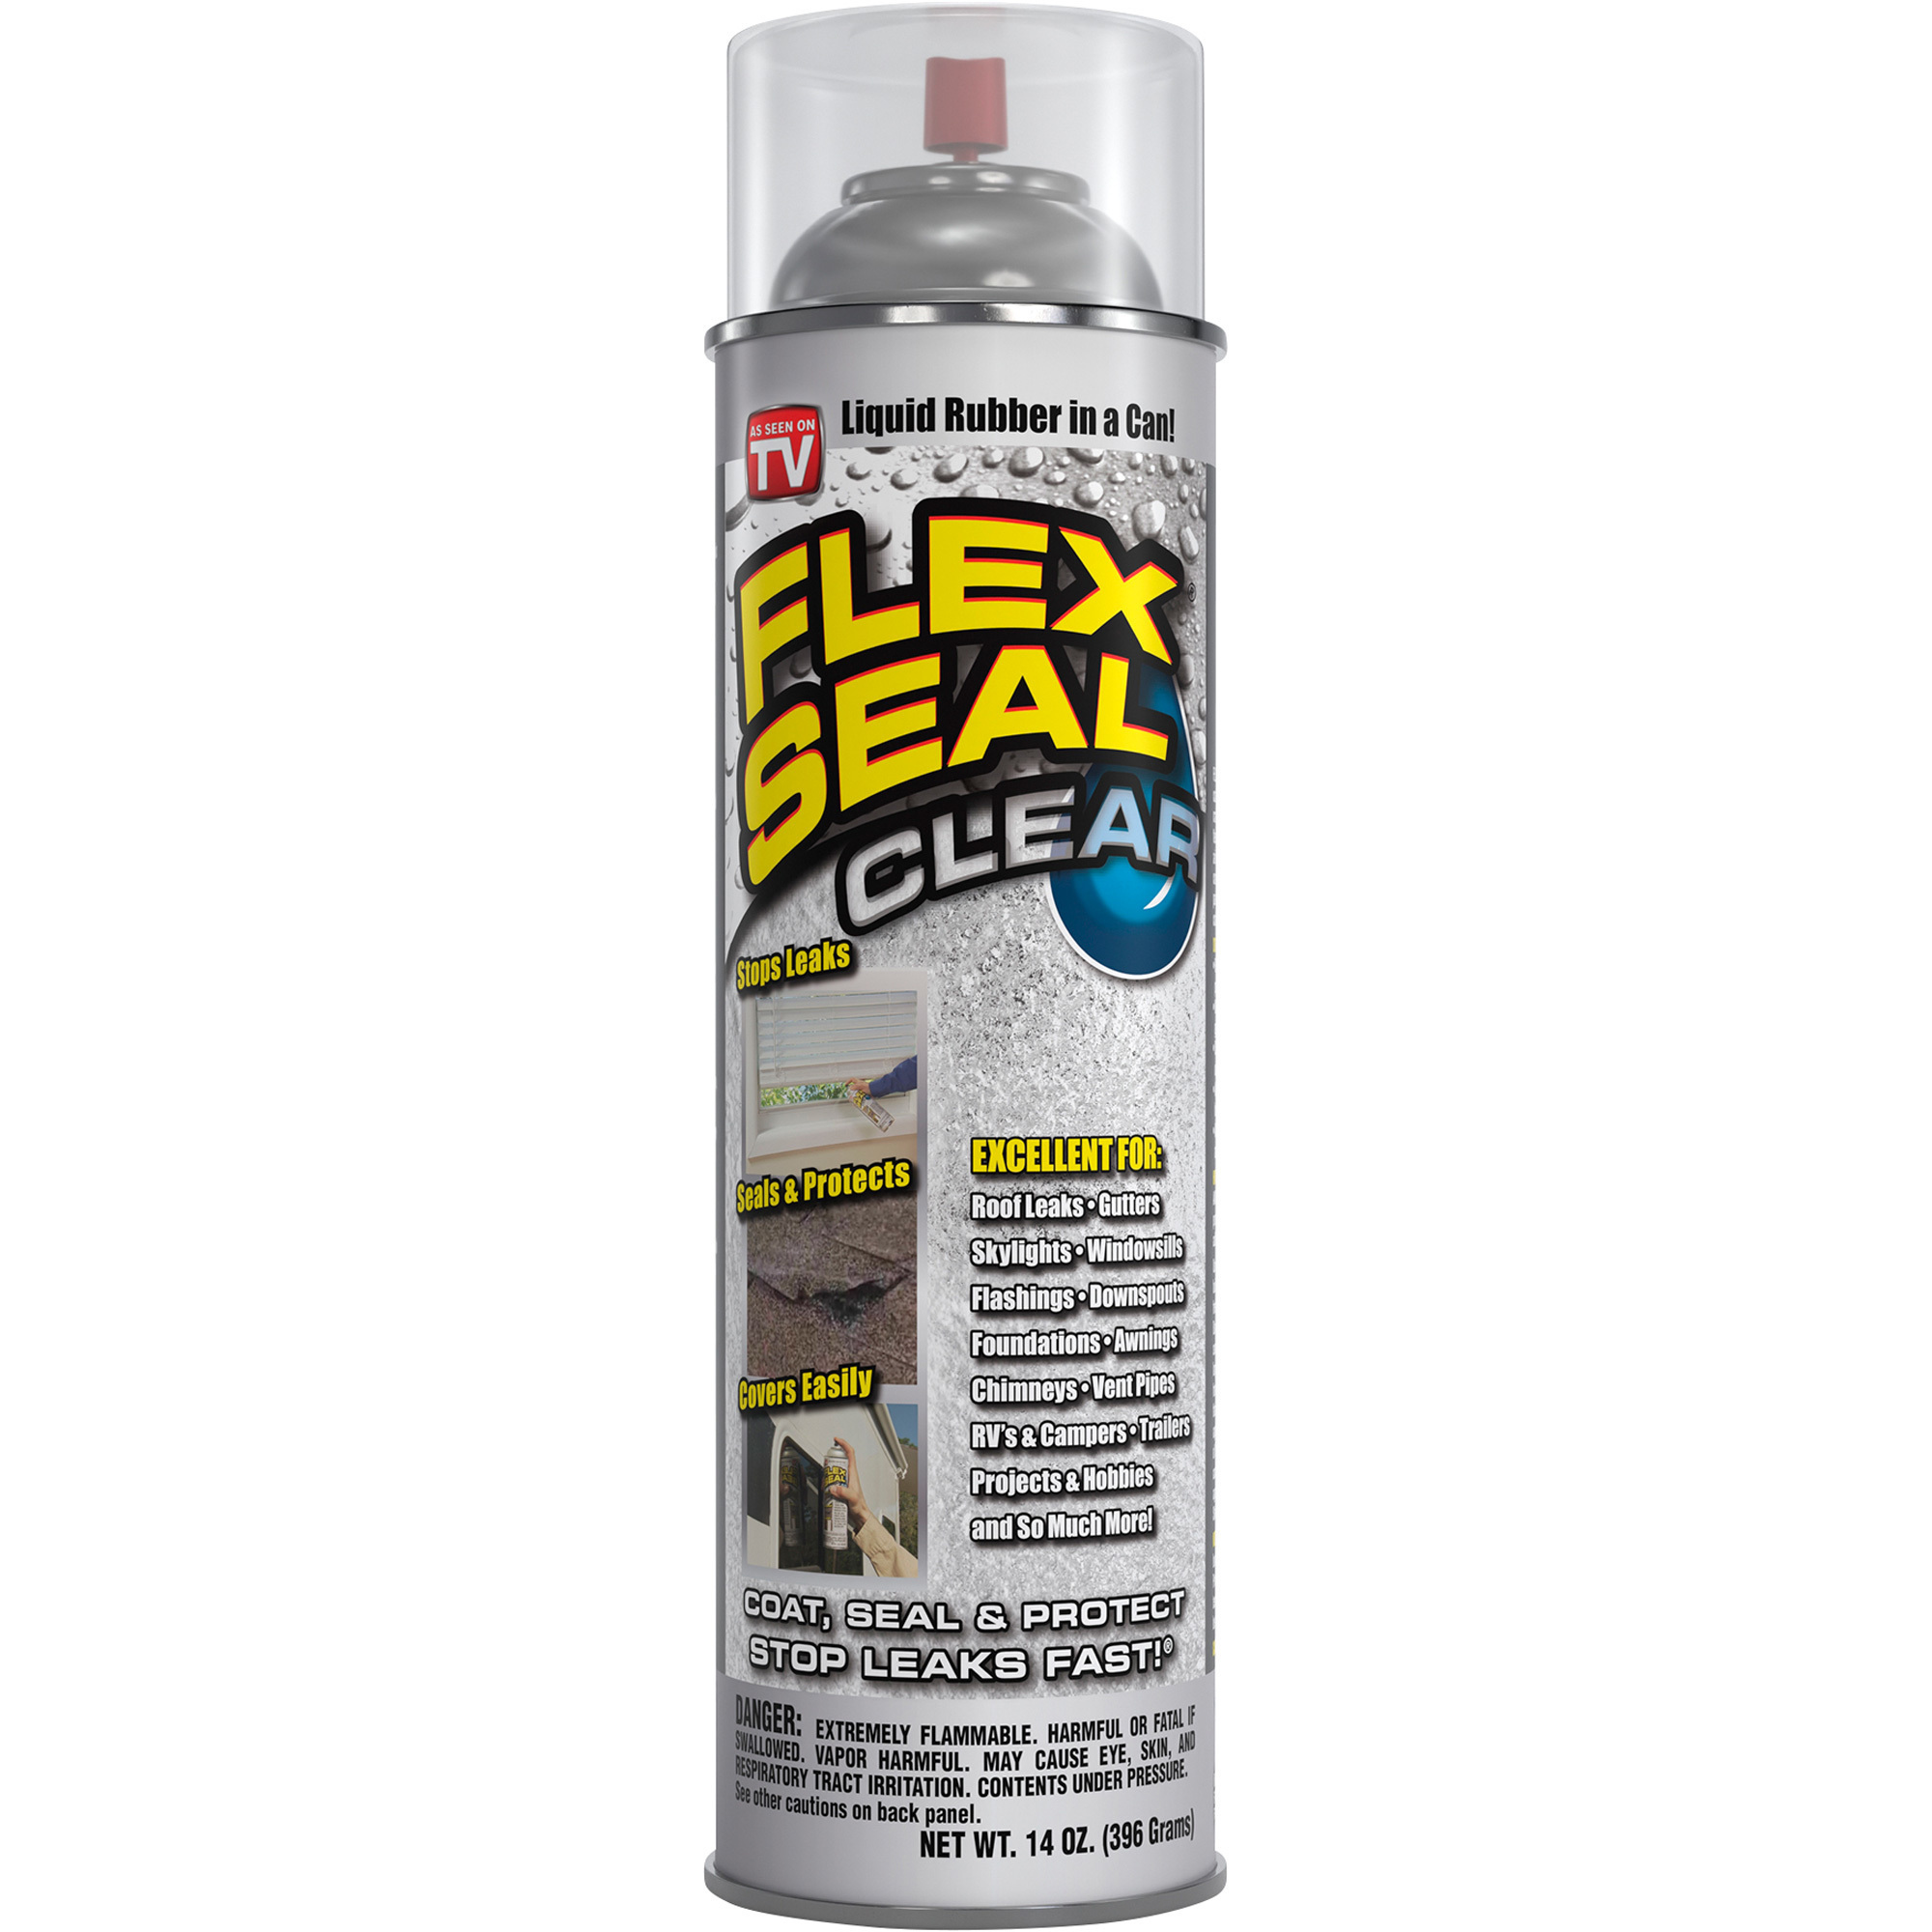 Flex Seal Liquid Rubber Sealant Coating â Clear, 14-Oz. Aerosol